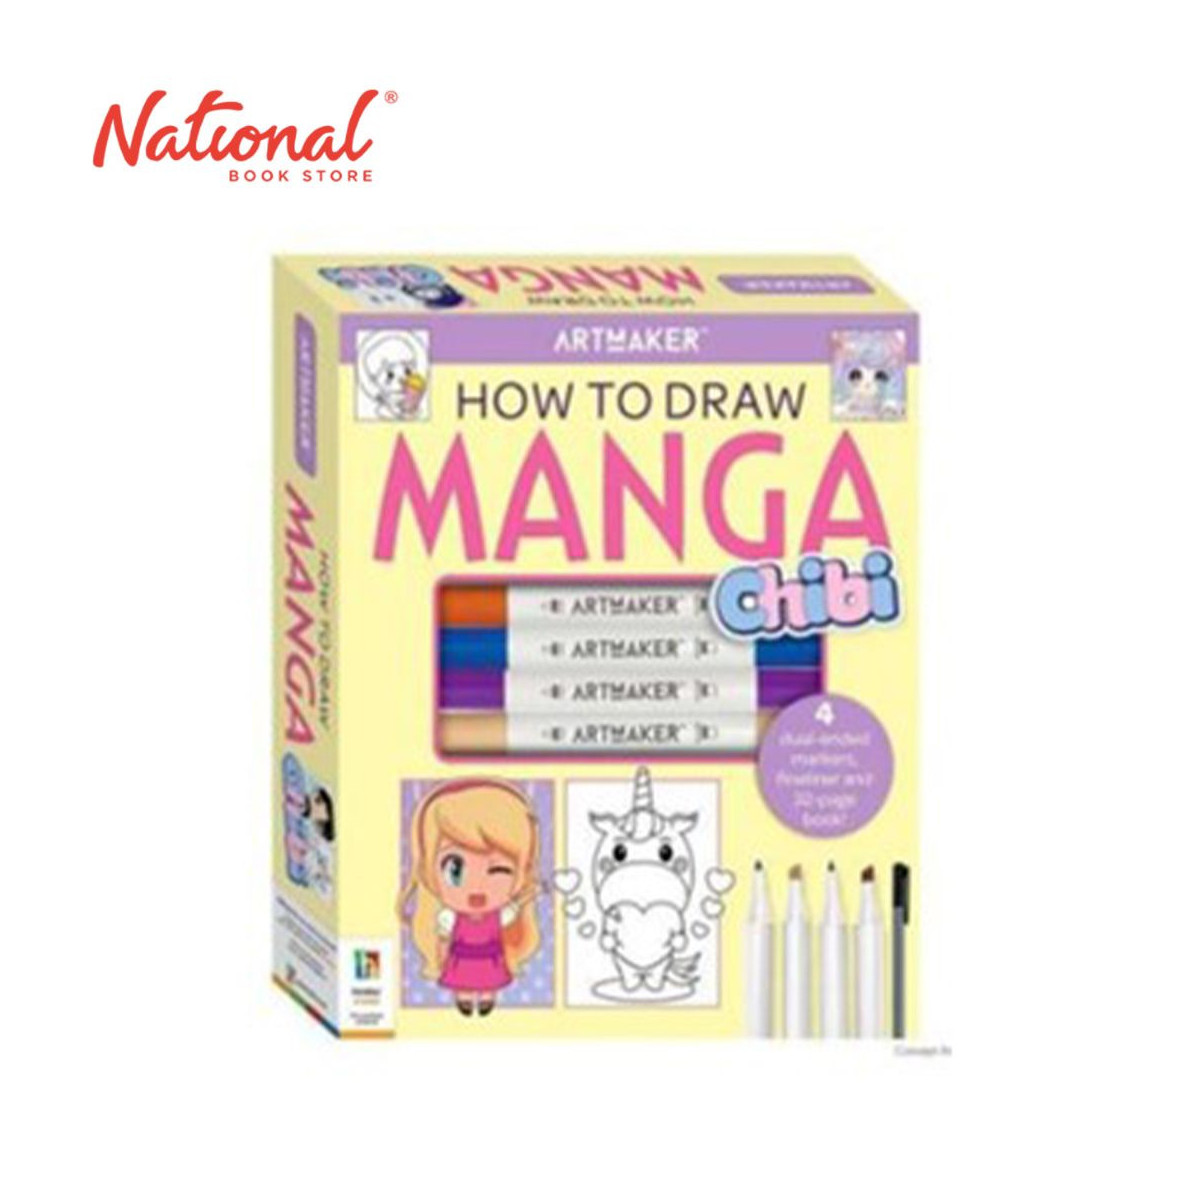 https://www.nationalbookstore.com/127166-thickbox_default/artmaker-how-to-draw-manga-chibi-art-books.jpg